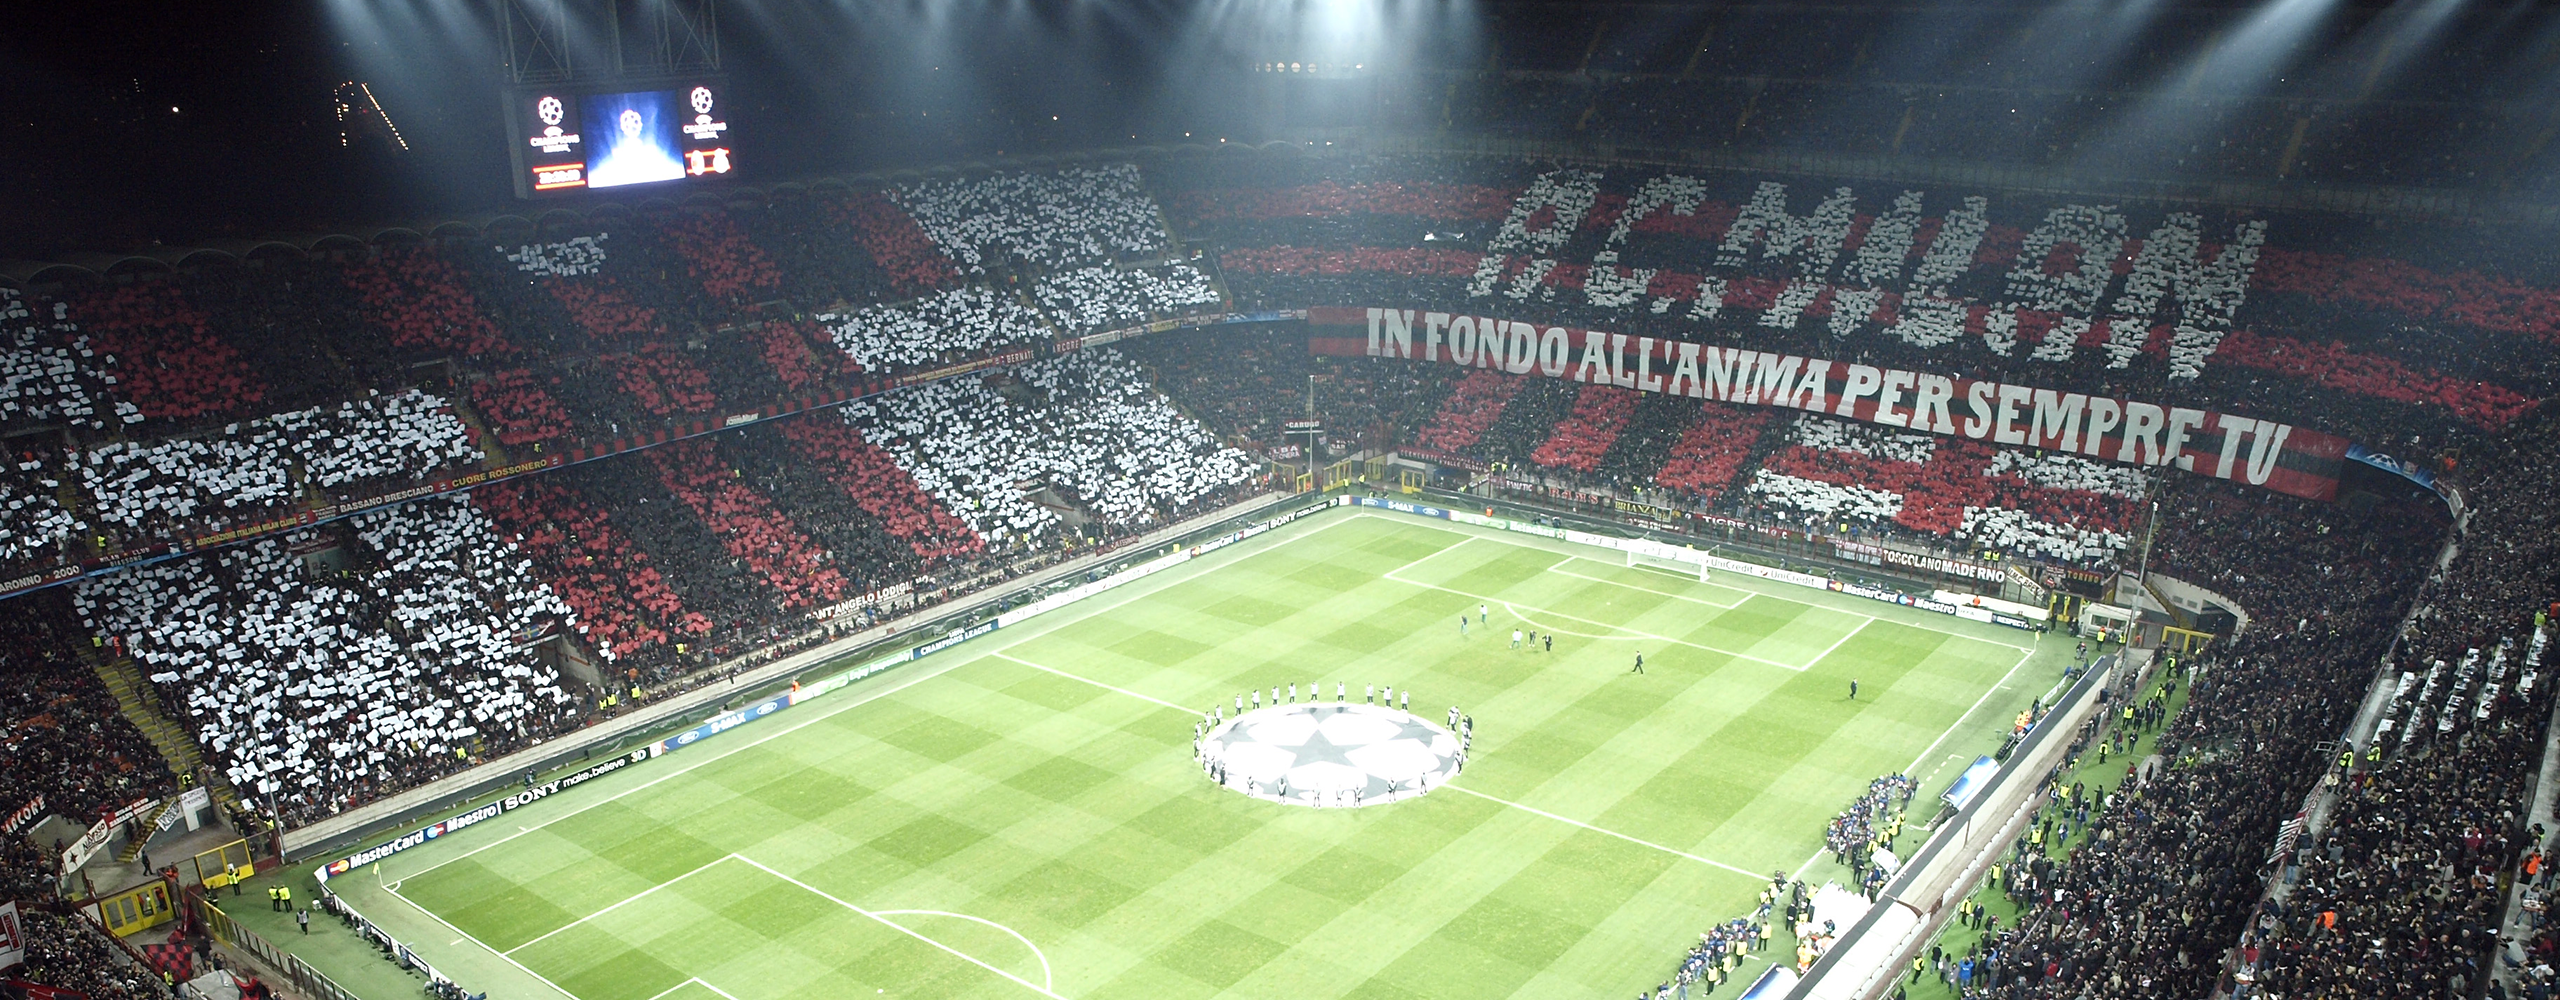 History of the AC Milan | AC Milan